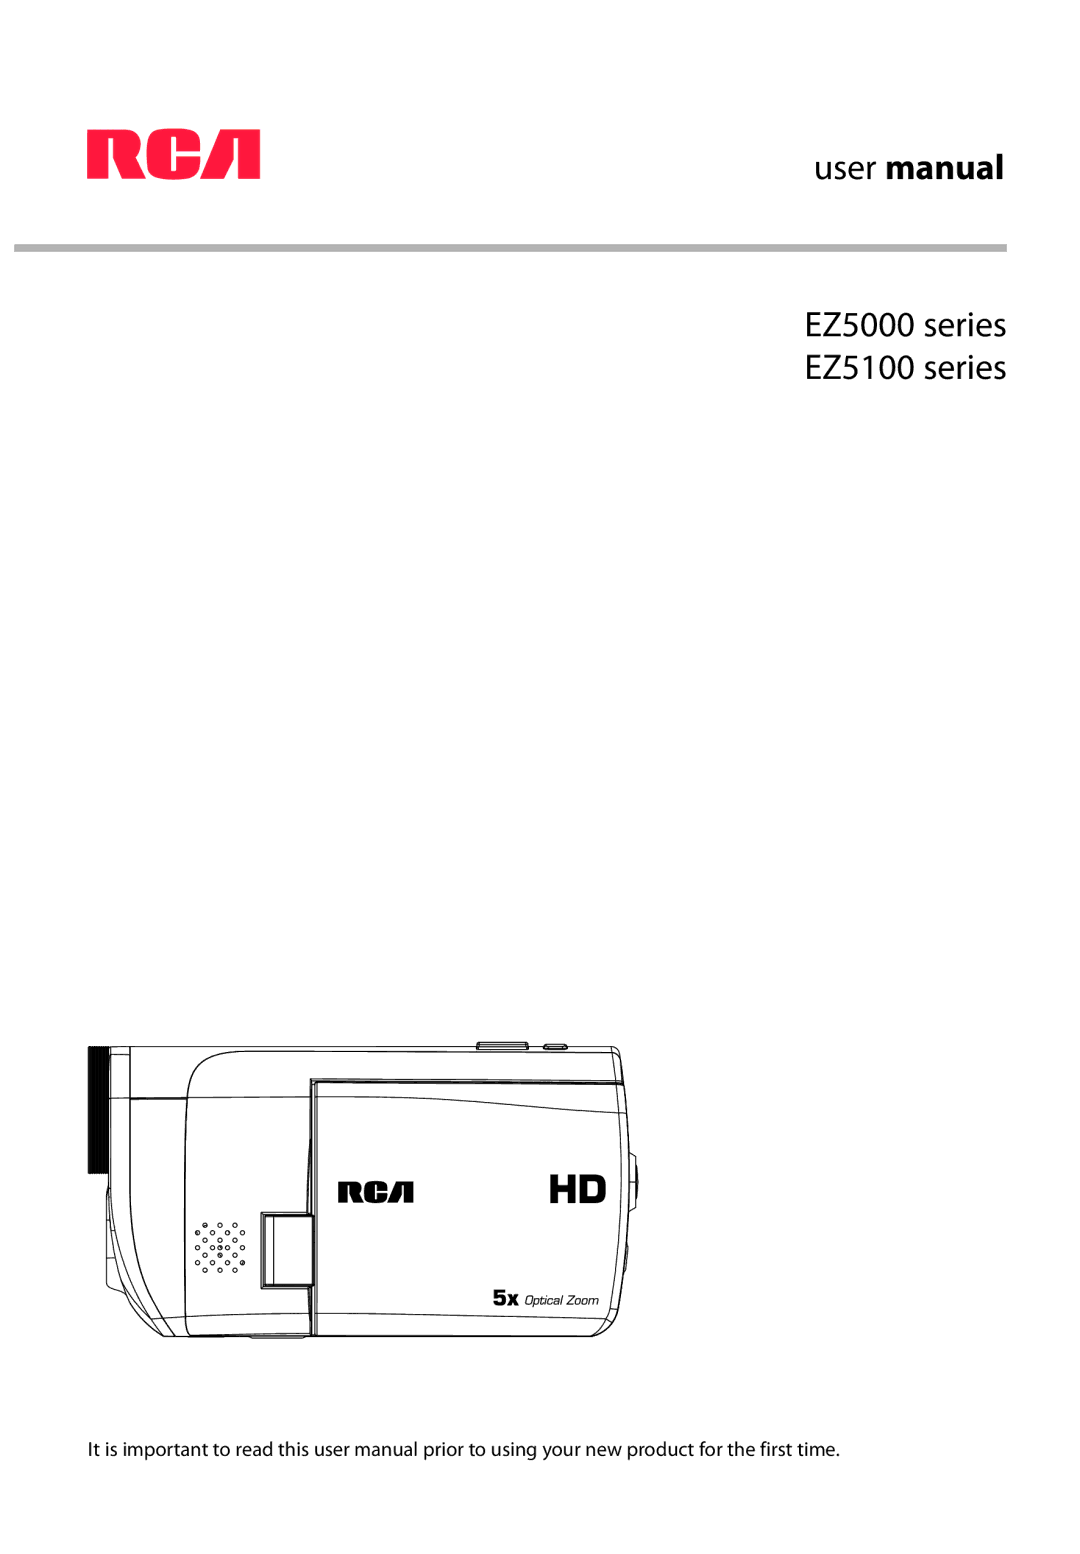 RCA user manual EZ5000 series EZ5100 series 